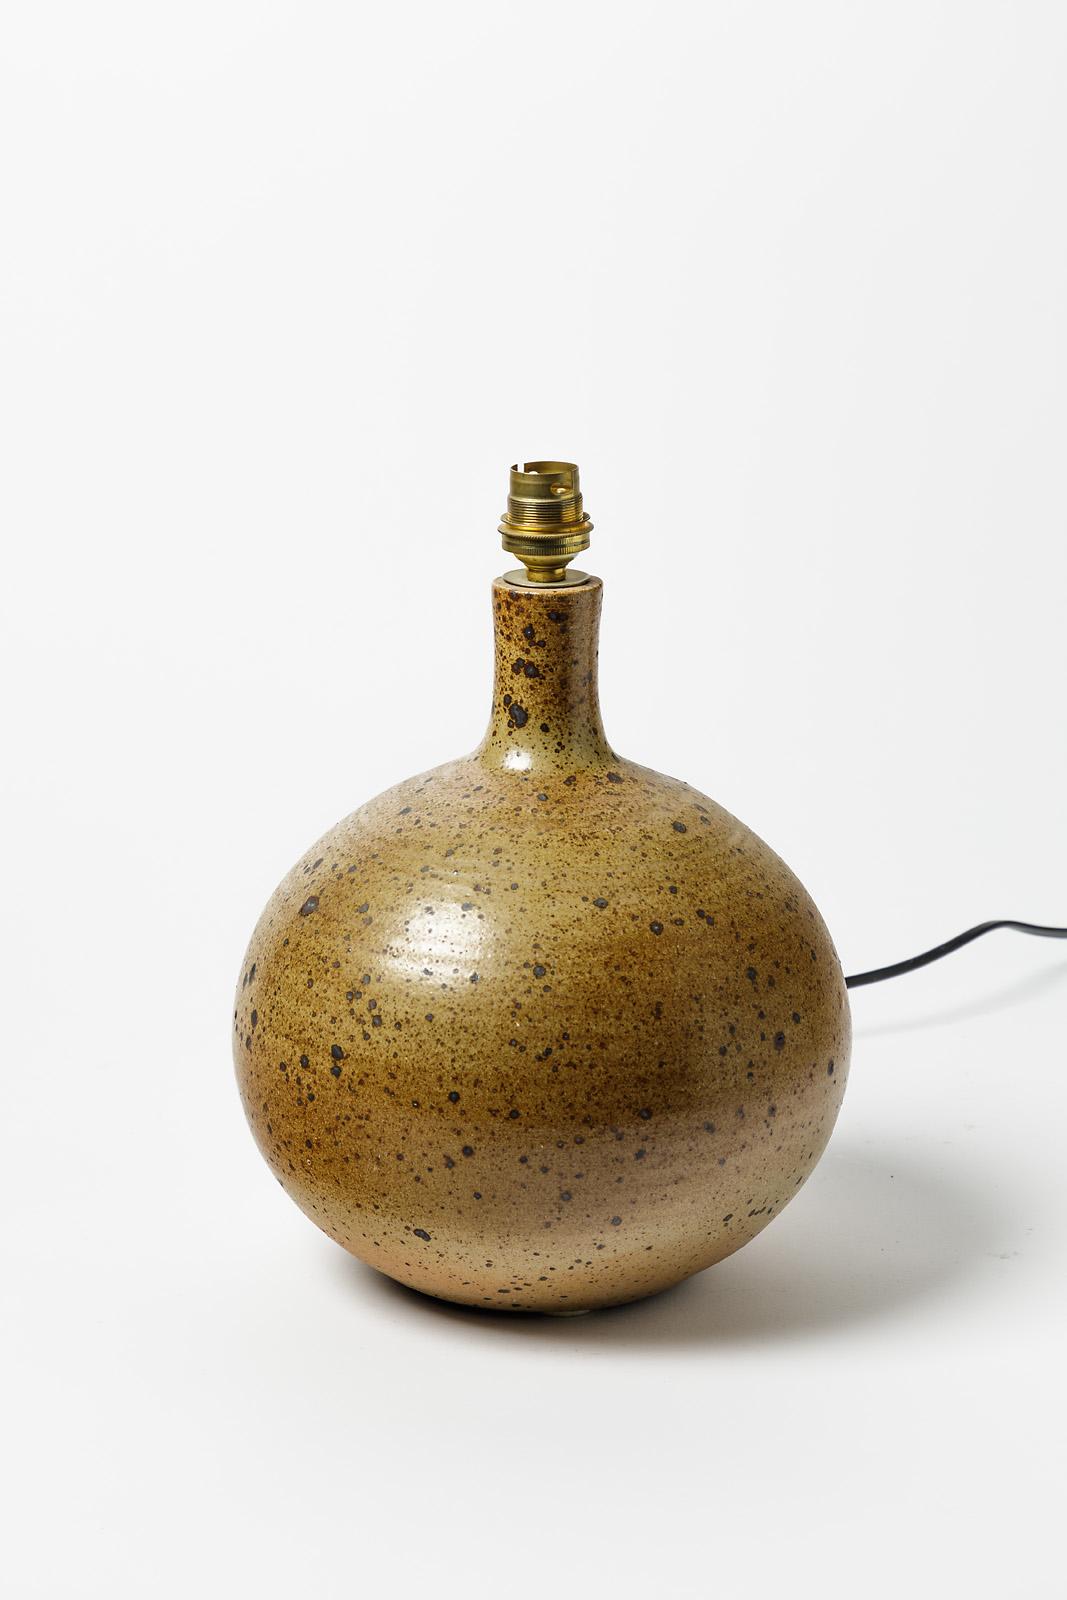 Mid-Century Modern La Borne Brown Stoneware Ceramic Table Lamp 20th Century Design 1970 For Sale